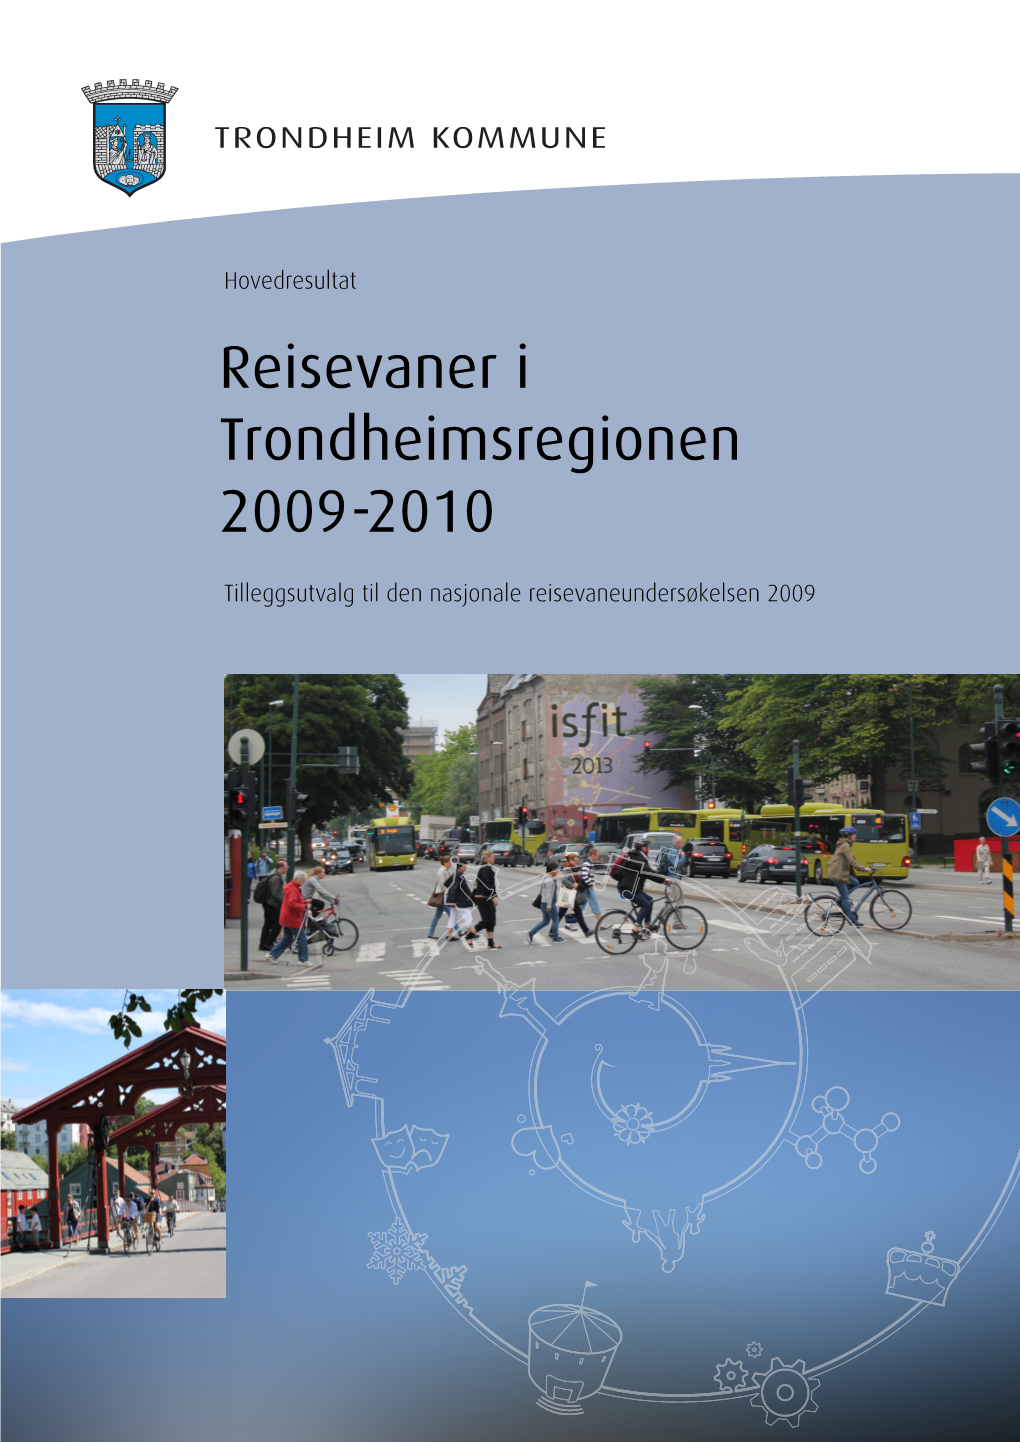 Reisevaner I Trondheimsregionen 2009-2010